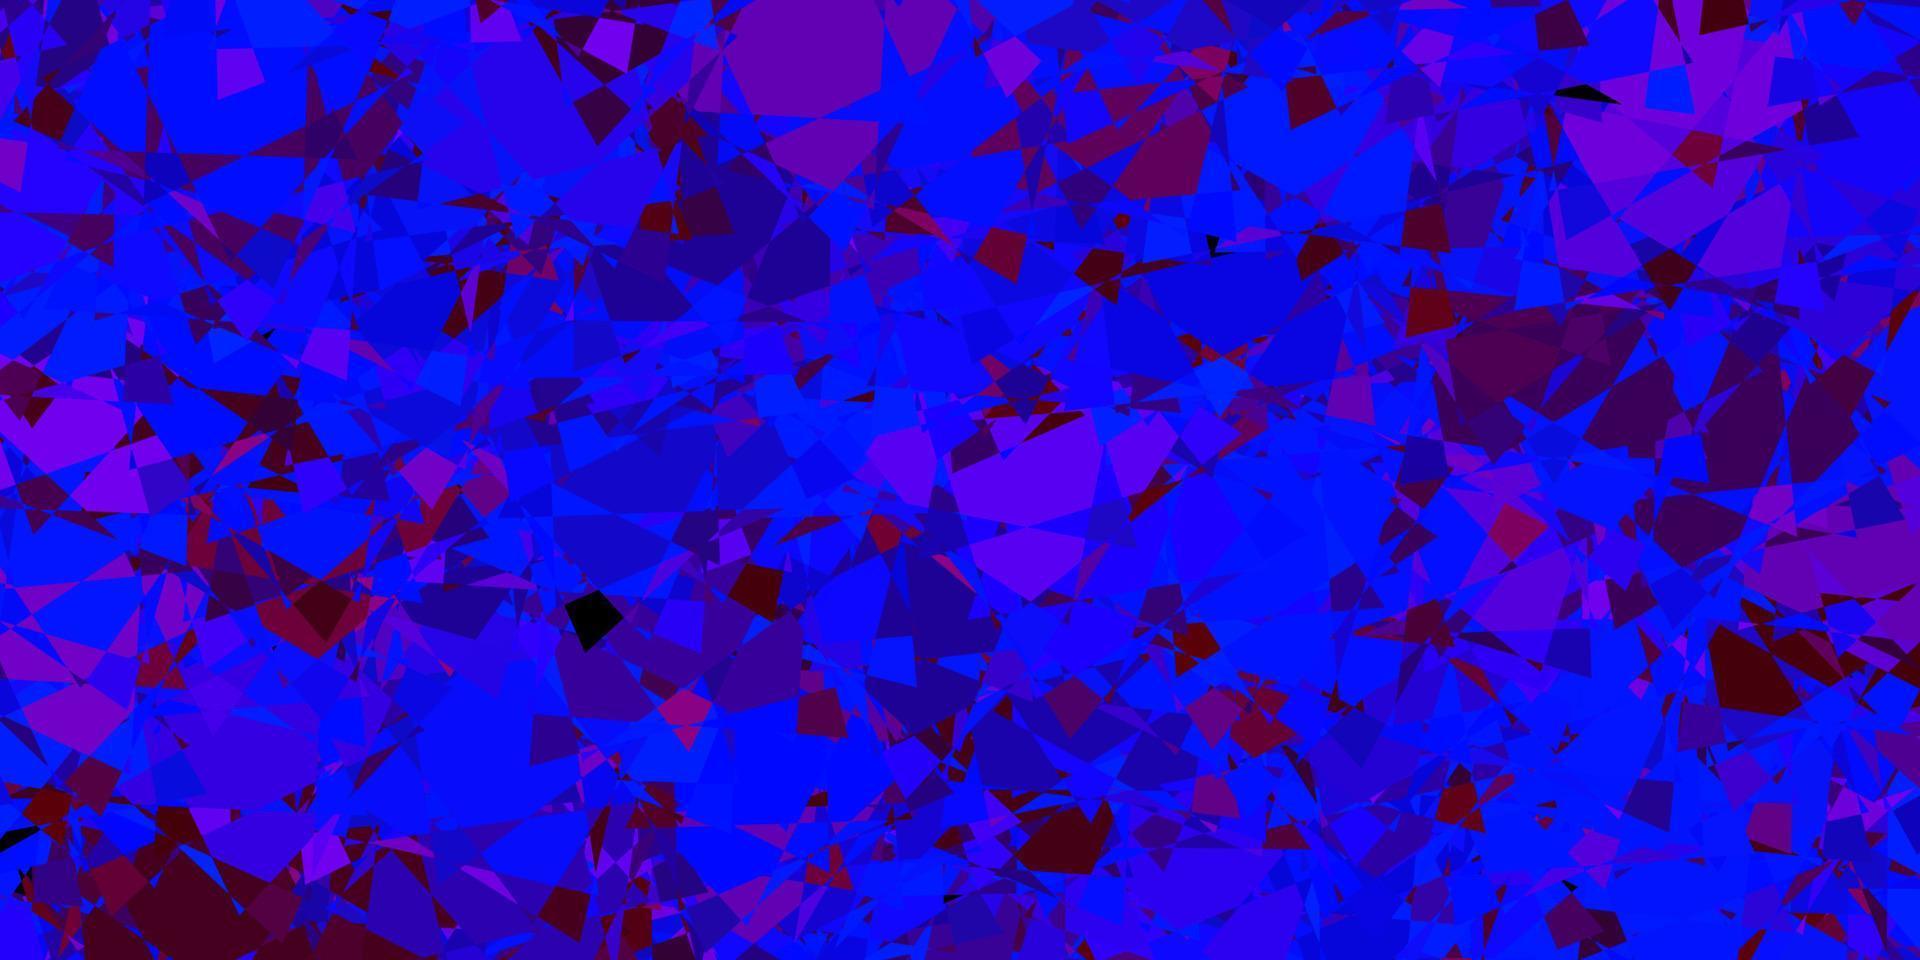 padrão de vetor azul e vermelho escuro com formas poligonais.